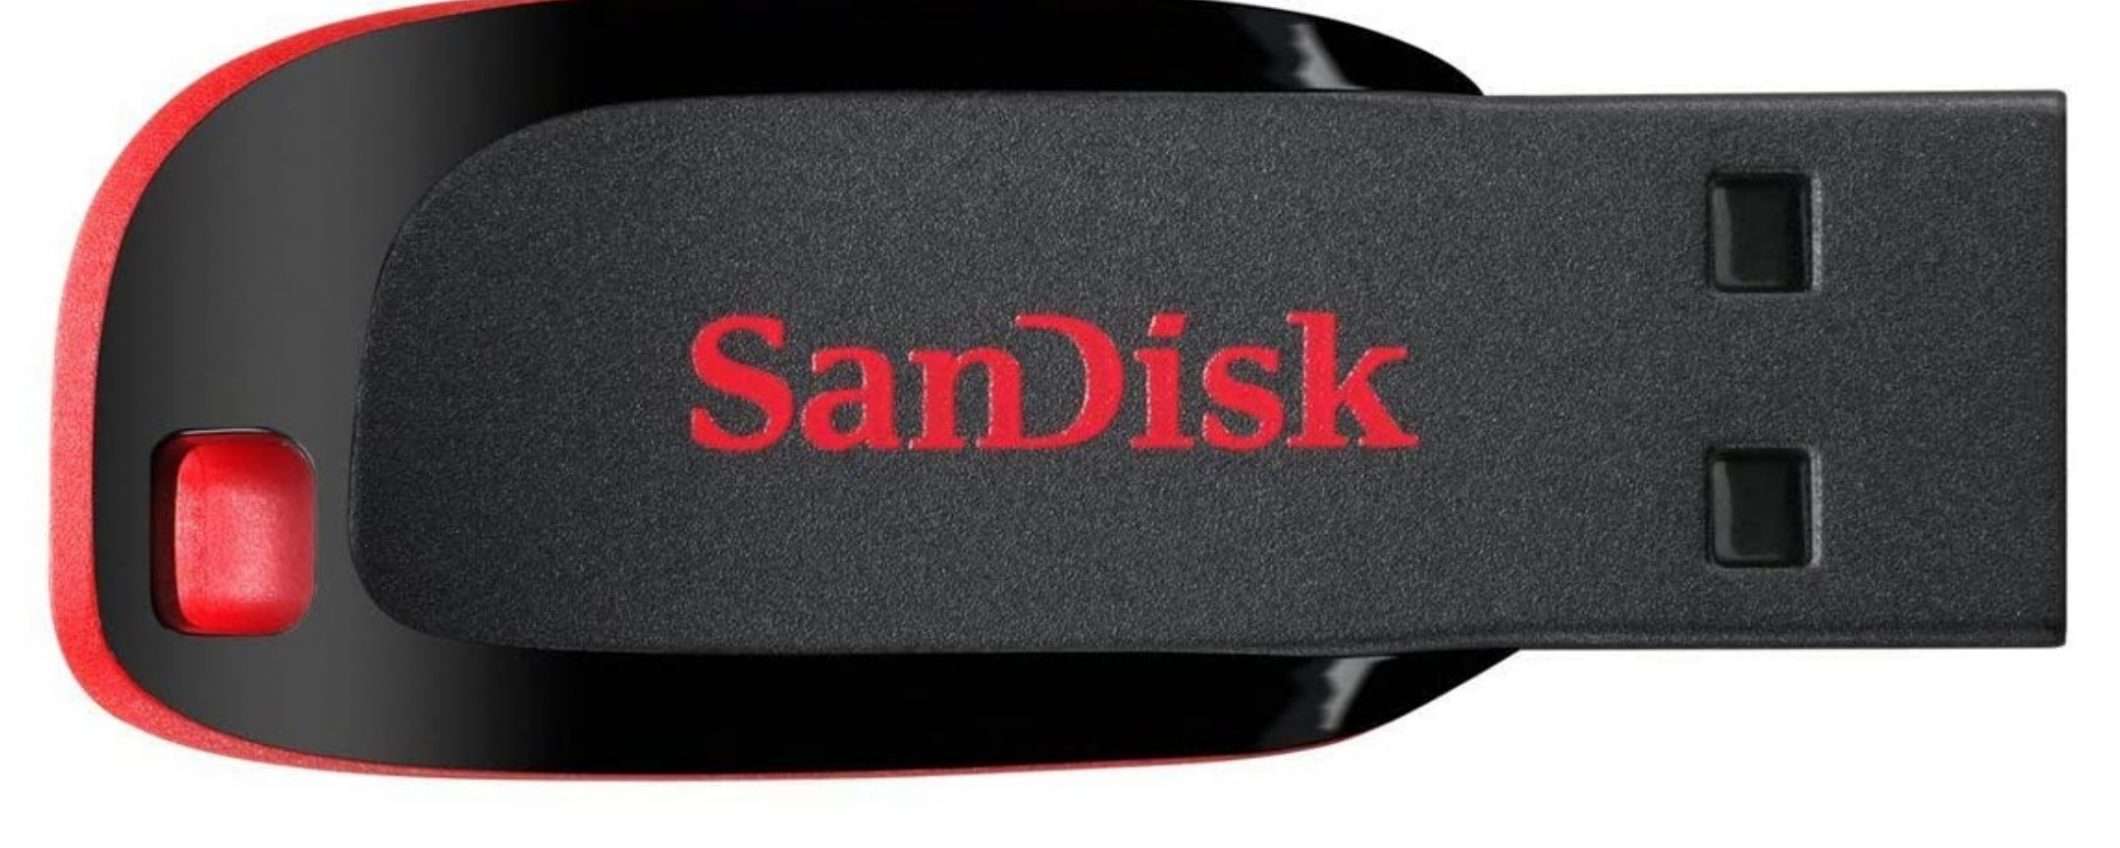 Meno di 20 euro per una delle pendrive da 128GB più affidabili di SanDisk